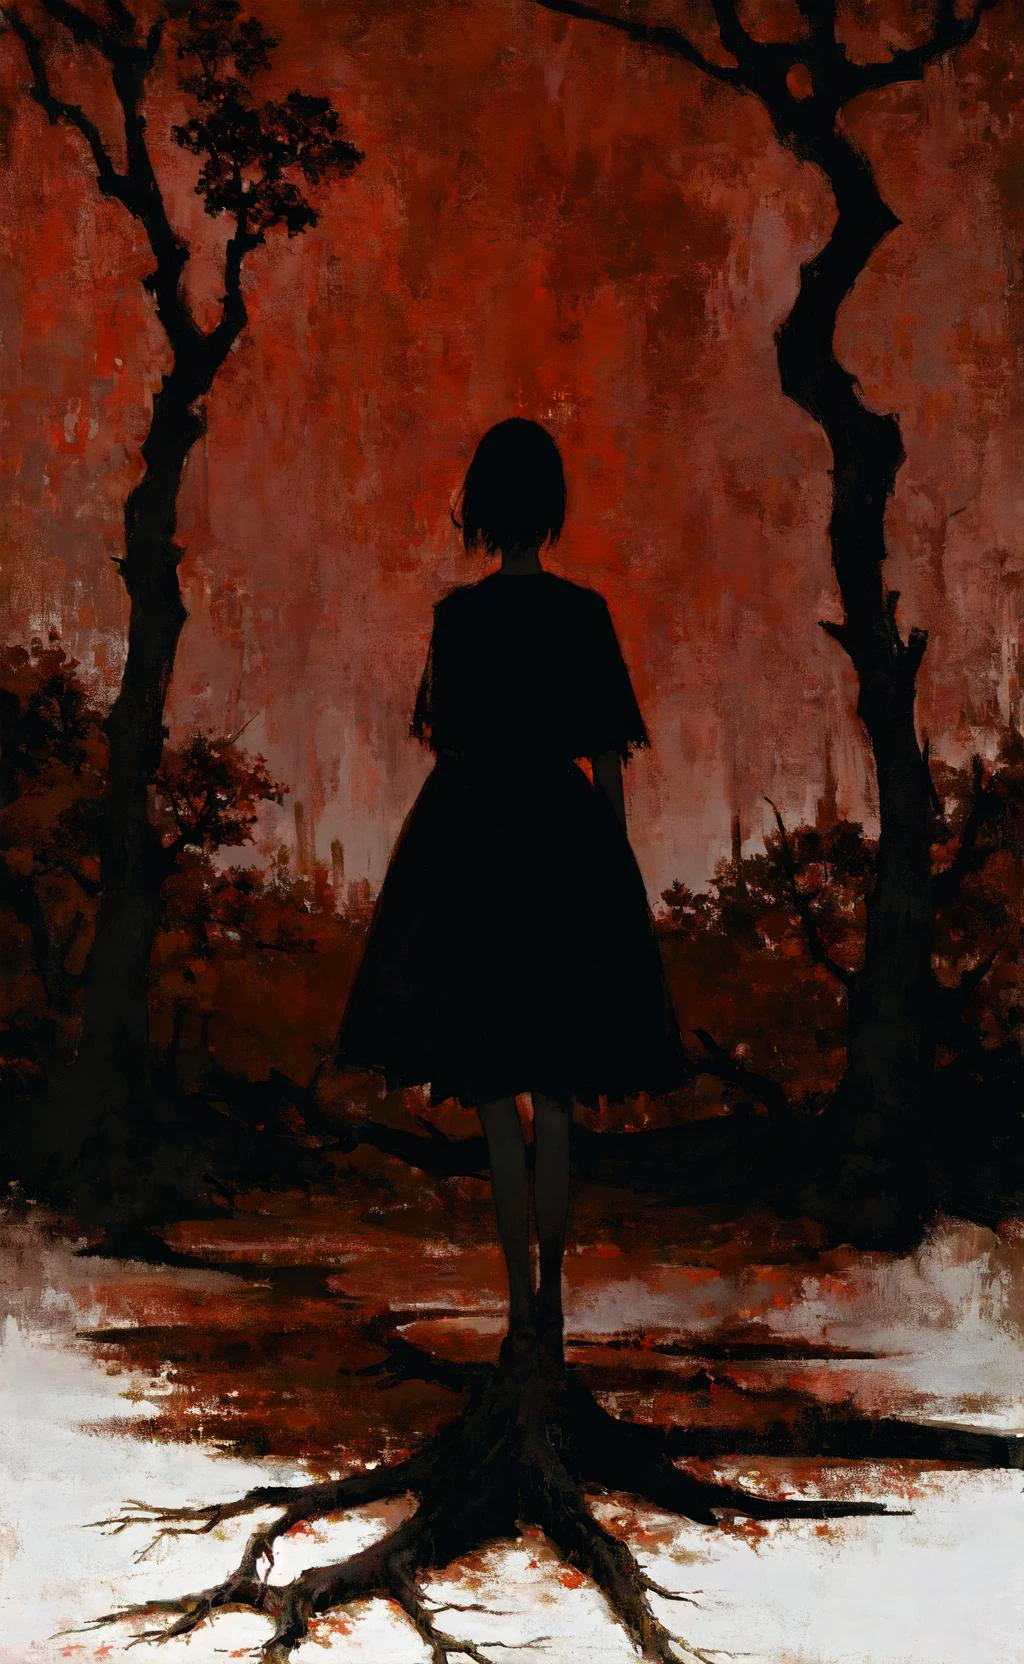 Obra de arte, melhor qualidade, garota parada debaixo da árvore morta, Paleta preta e vermelha, estranho